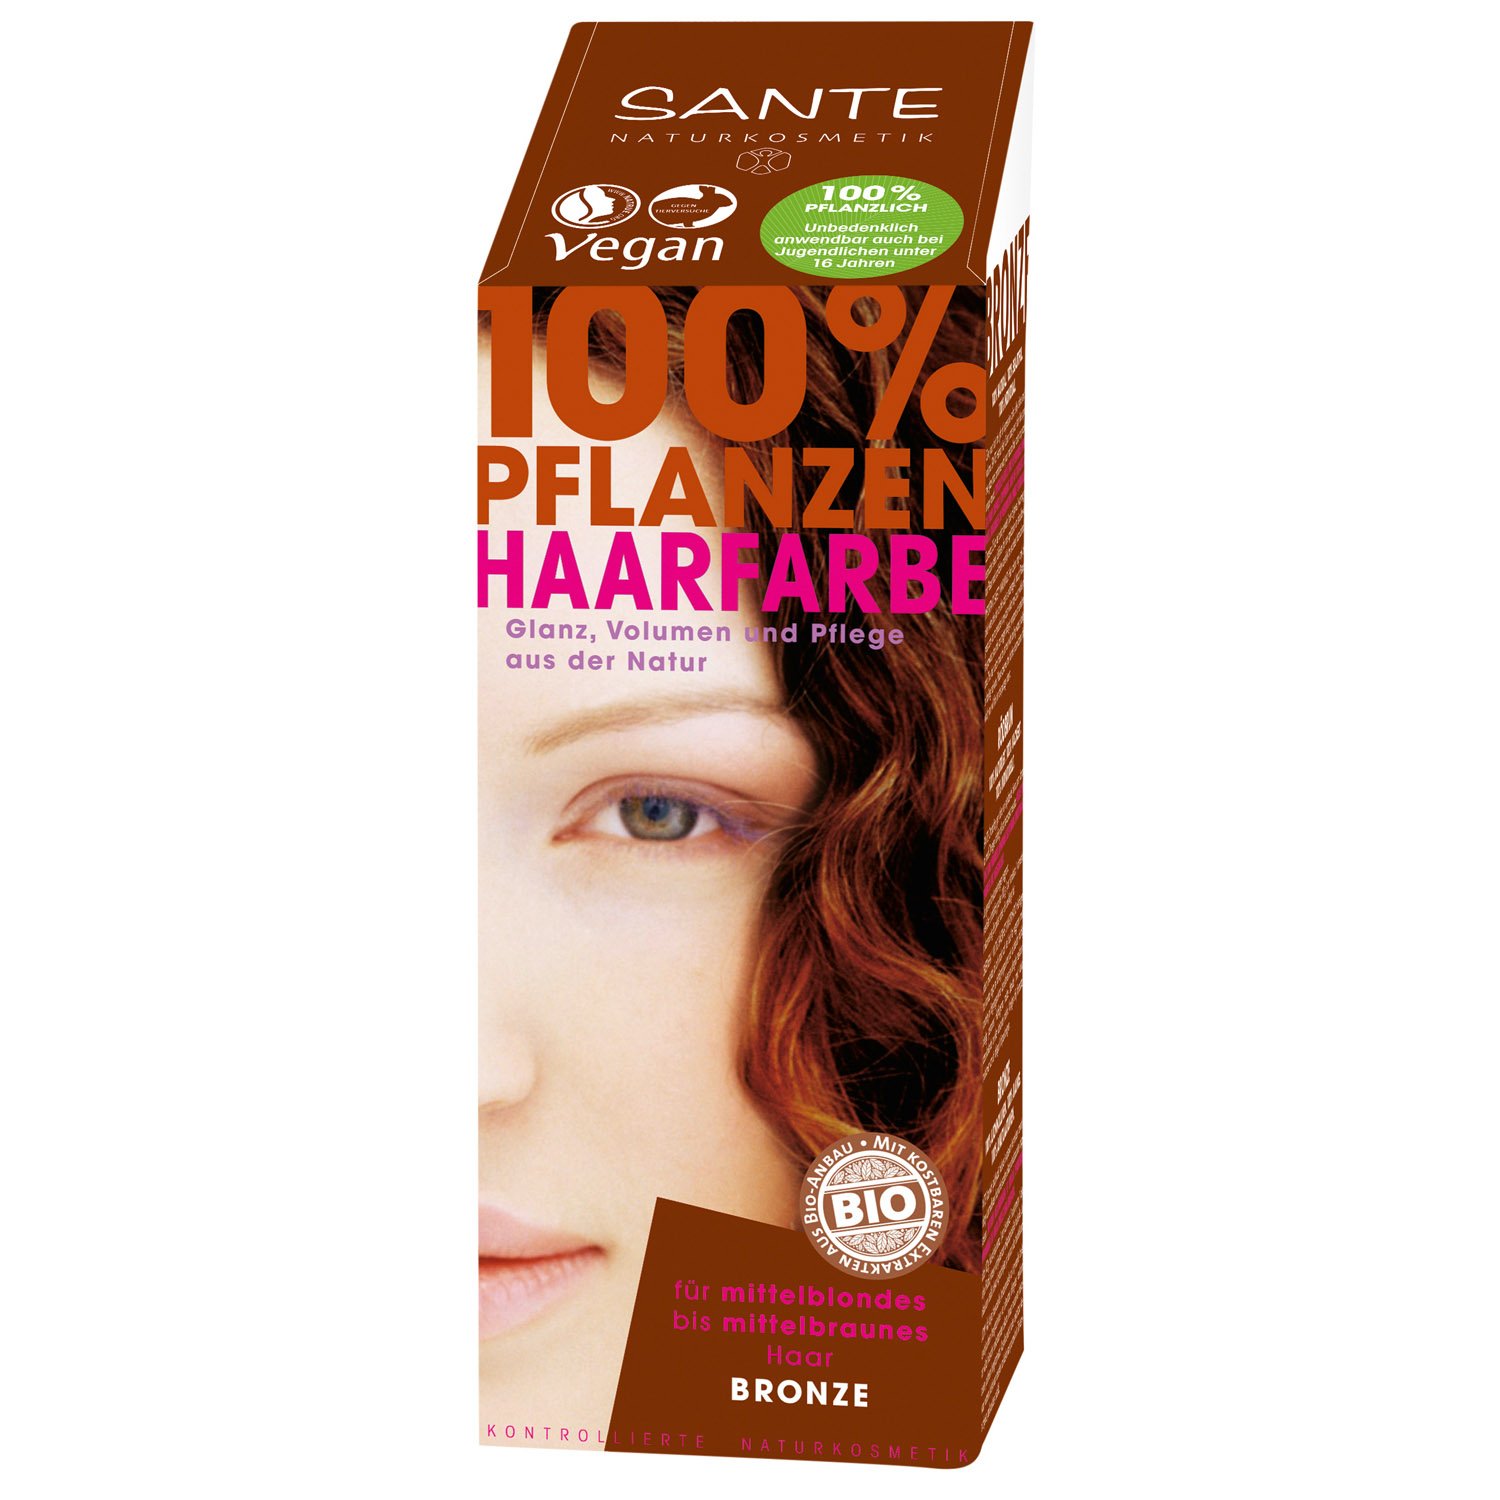 Біо-фарба для волосся Sante Bronze, порошкова, рослинна, 100 г - фото 1